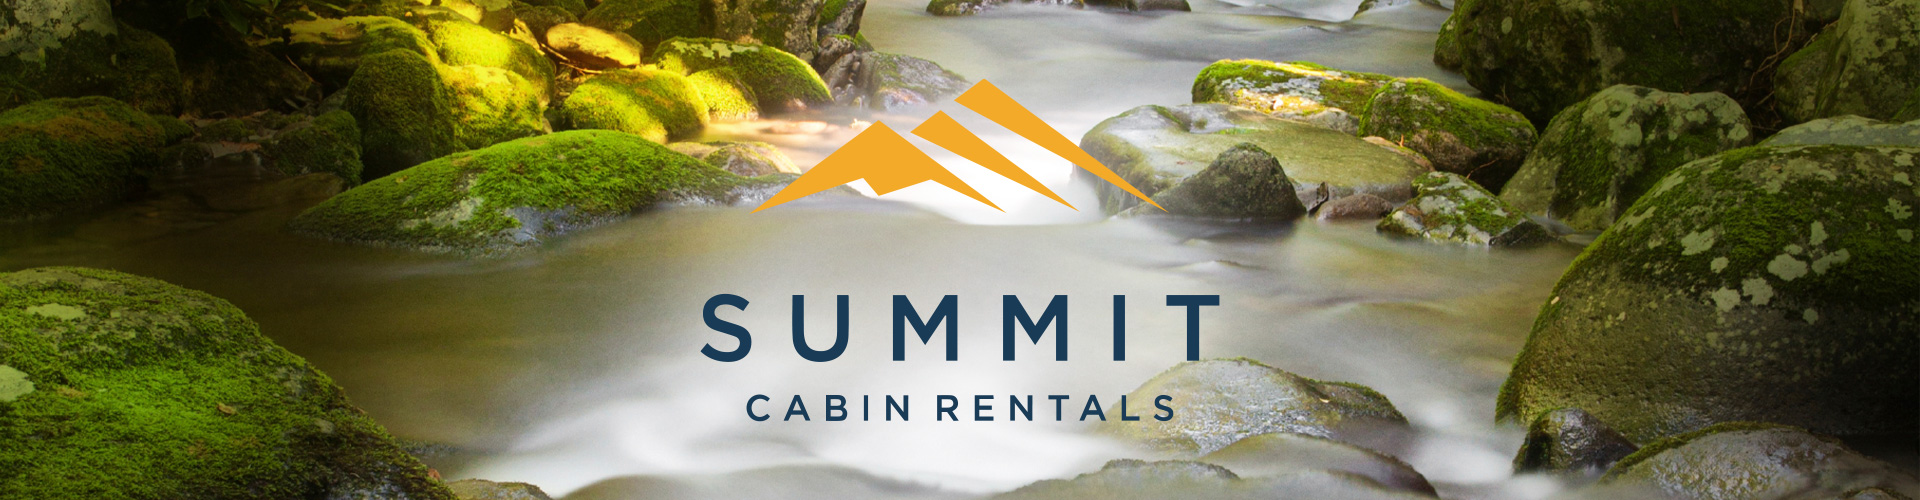 Summit Cabin Rentals Banner